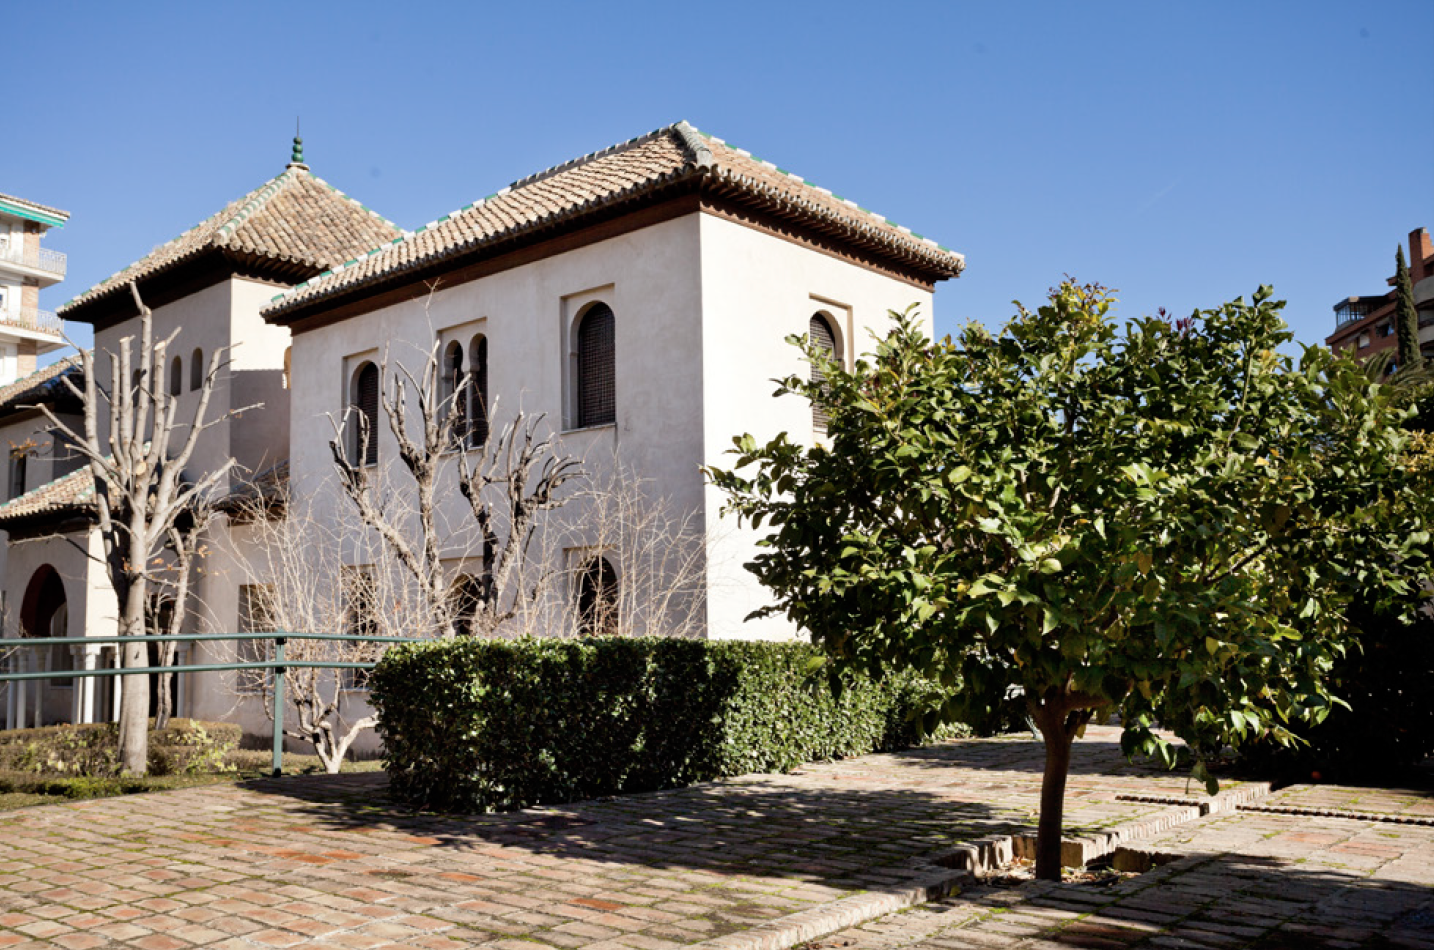 Alcázar Genil, sede de la Fundación Francisco Ayala. (Foto: Krum
Krumov. Archivo de la Fundación Francisco Ayala).